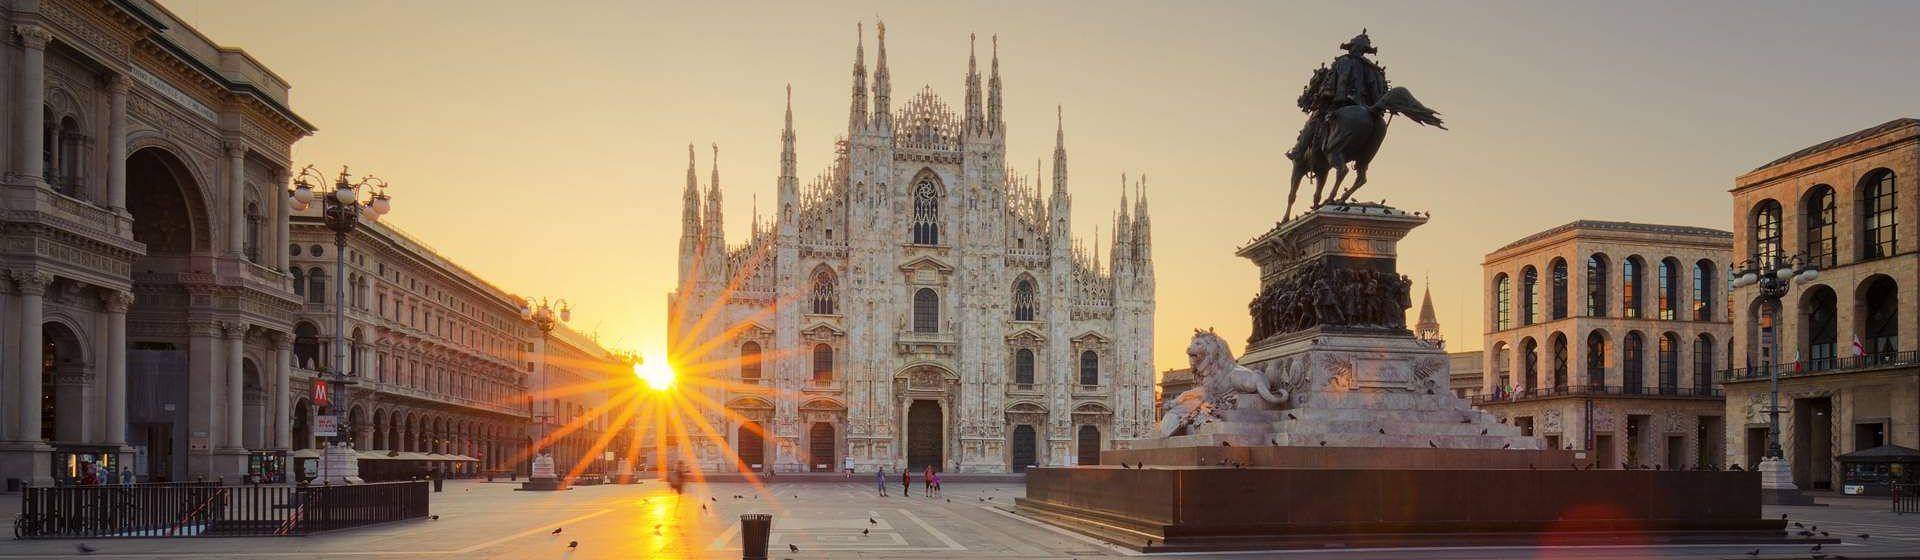 Holidays to Milan Image